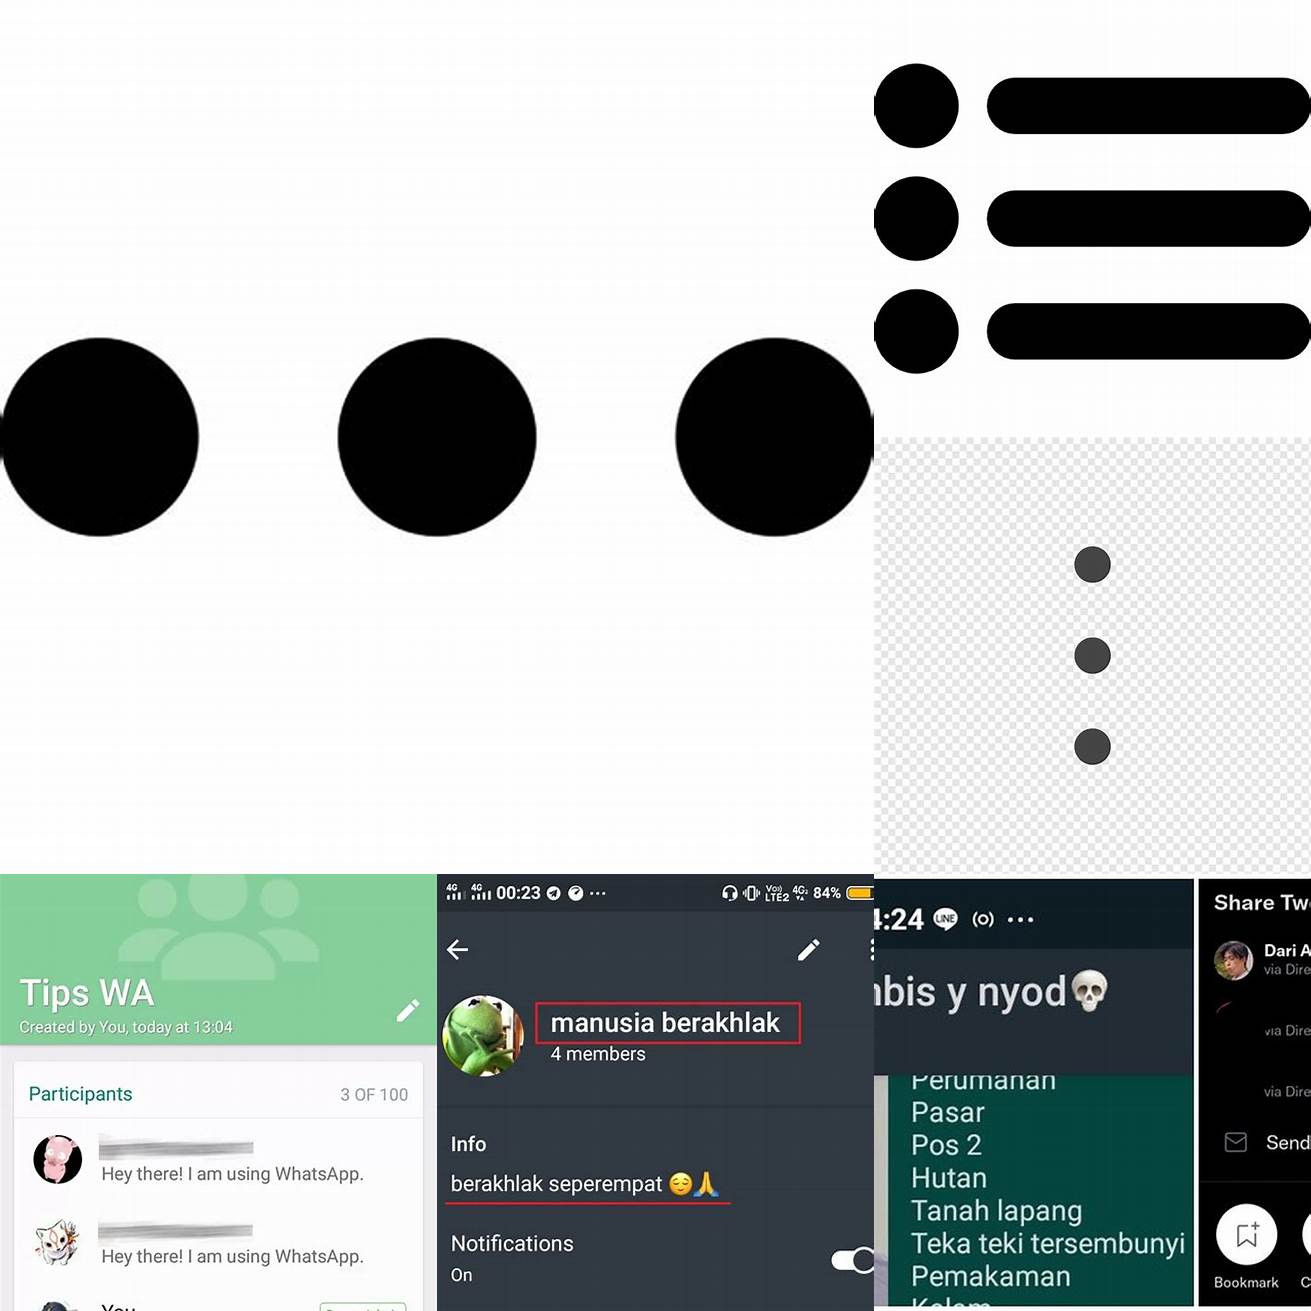 Klik ikon tiga titik di samping nama grup